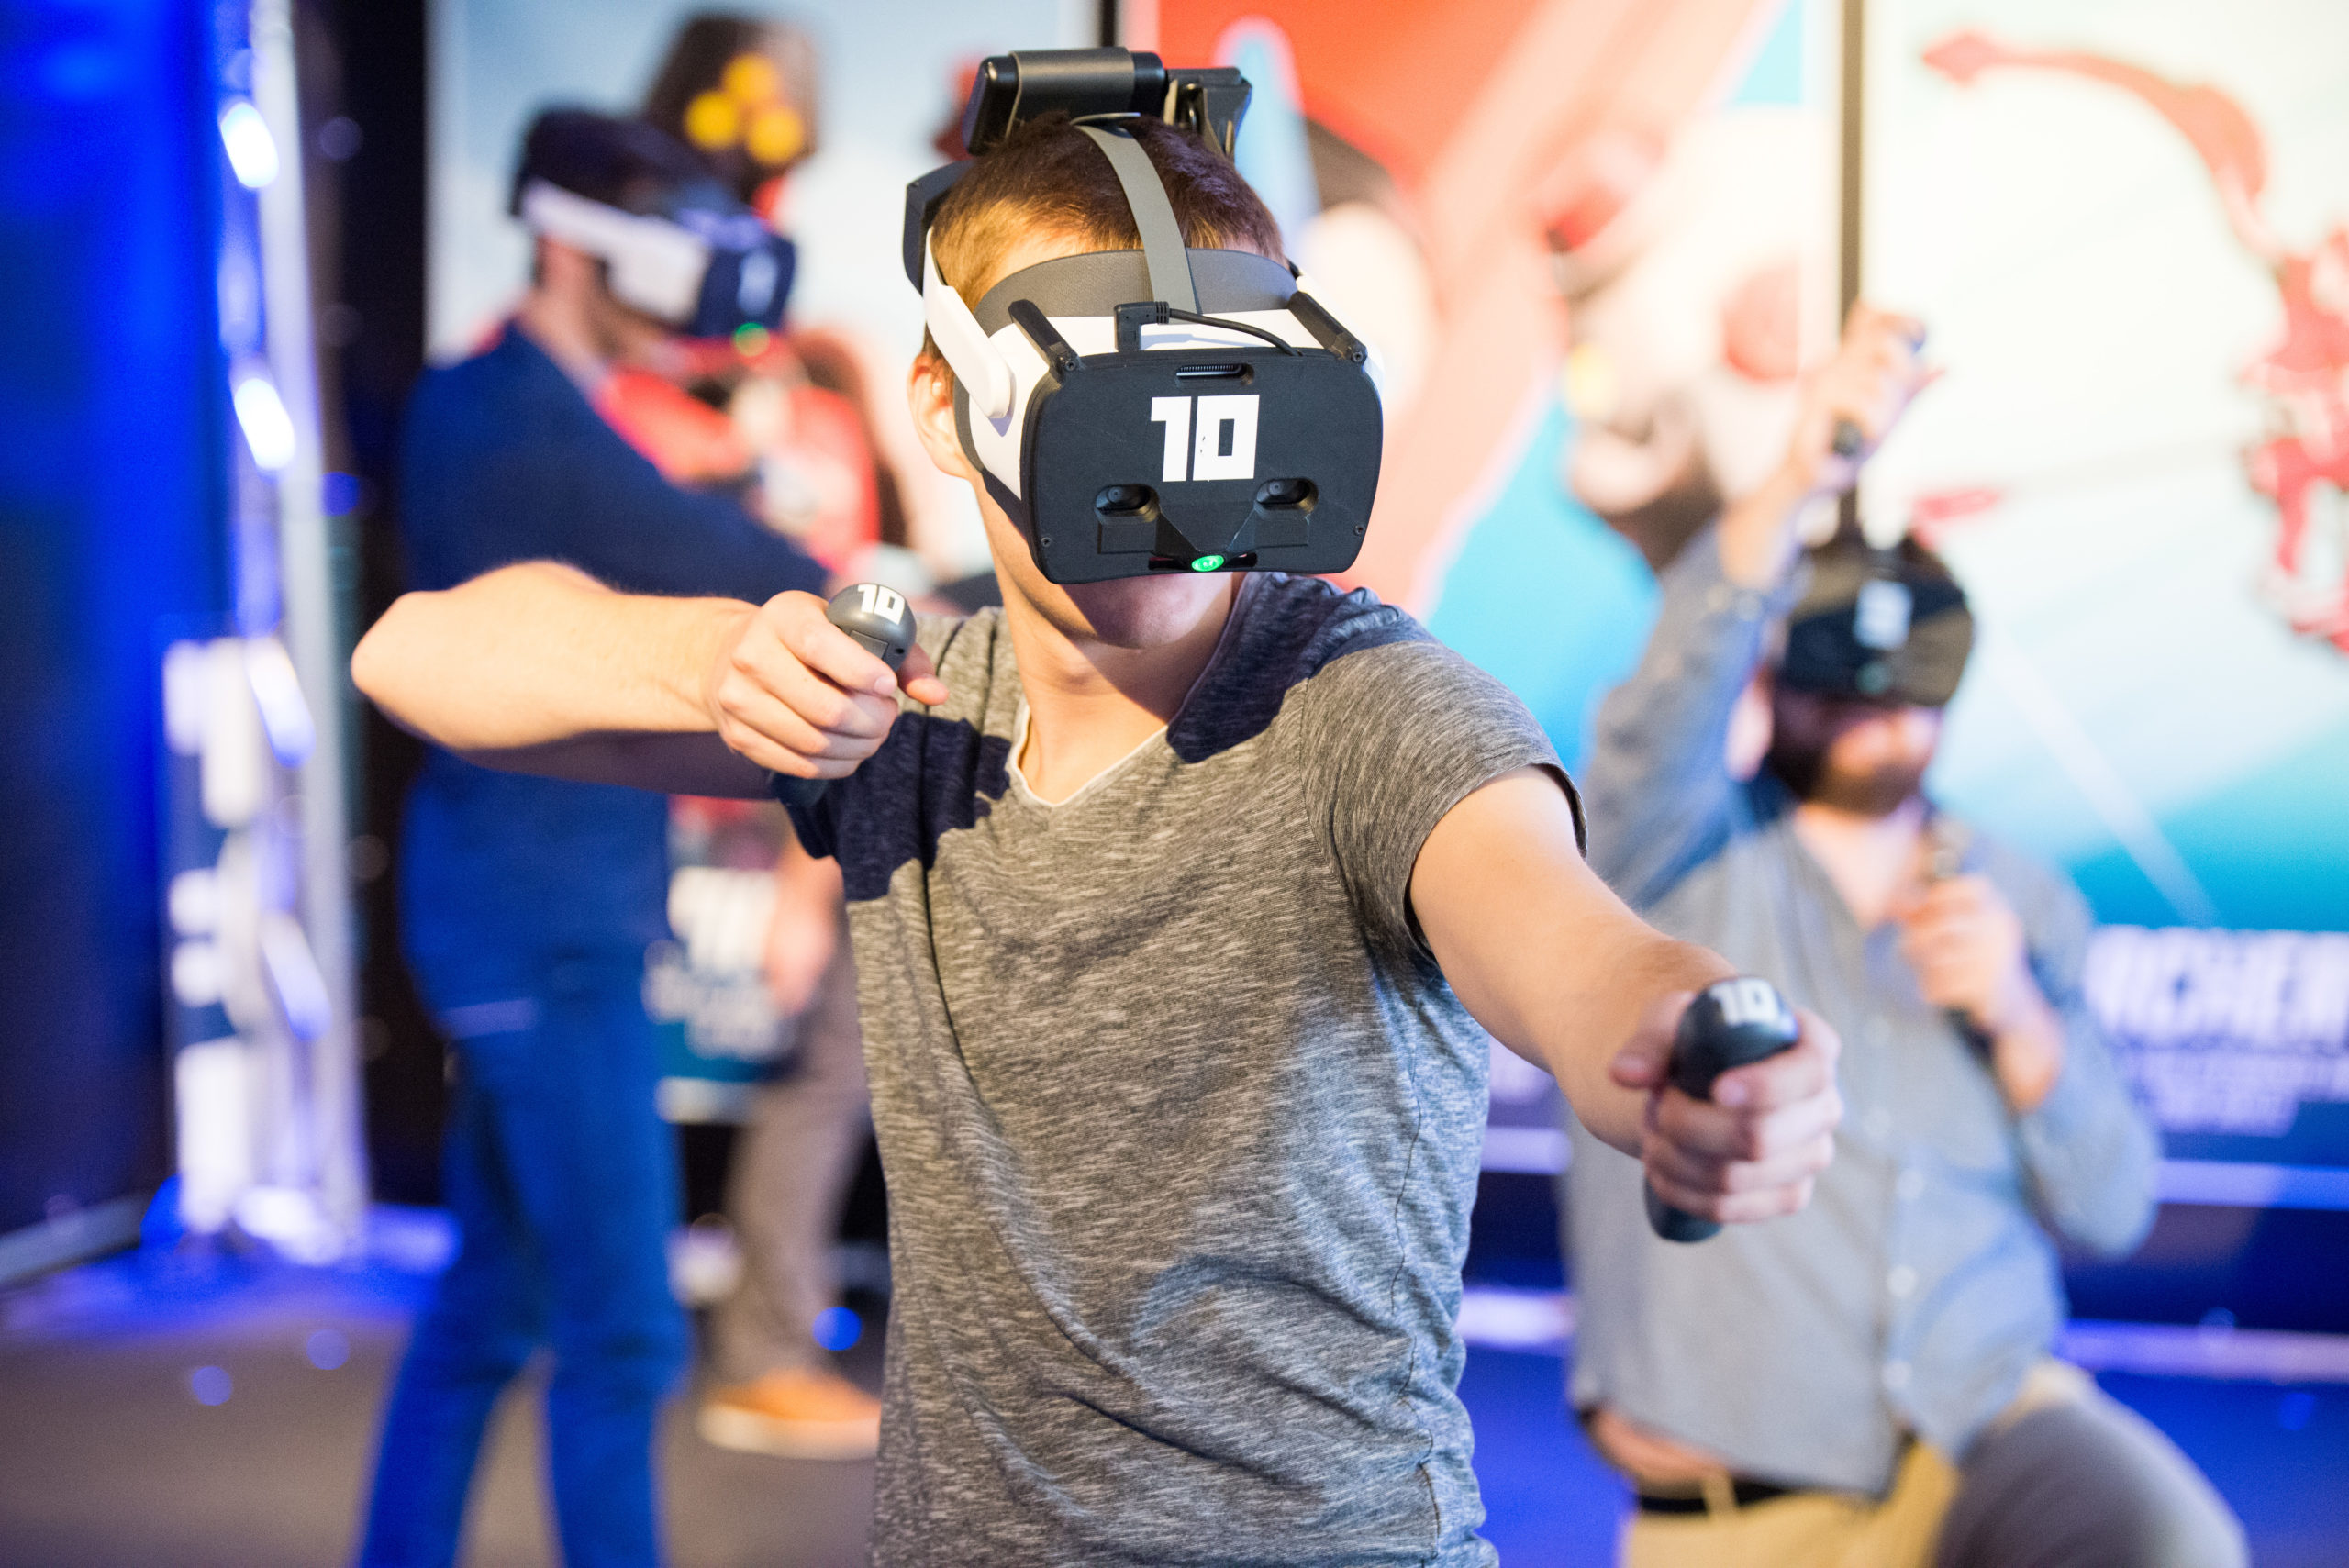 Recoge tus armas y lucha contra tus amigos en la realidad virtual libre para disfrutar de entretenimiento basado en la ubicación.